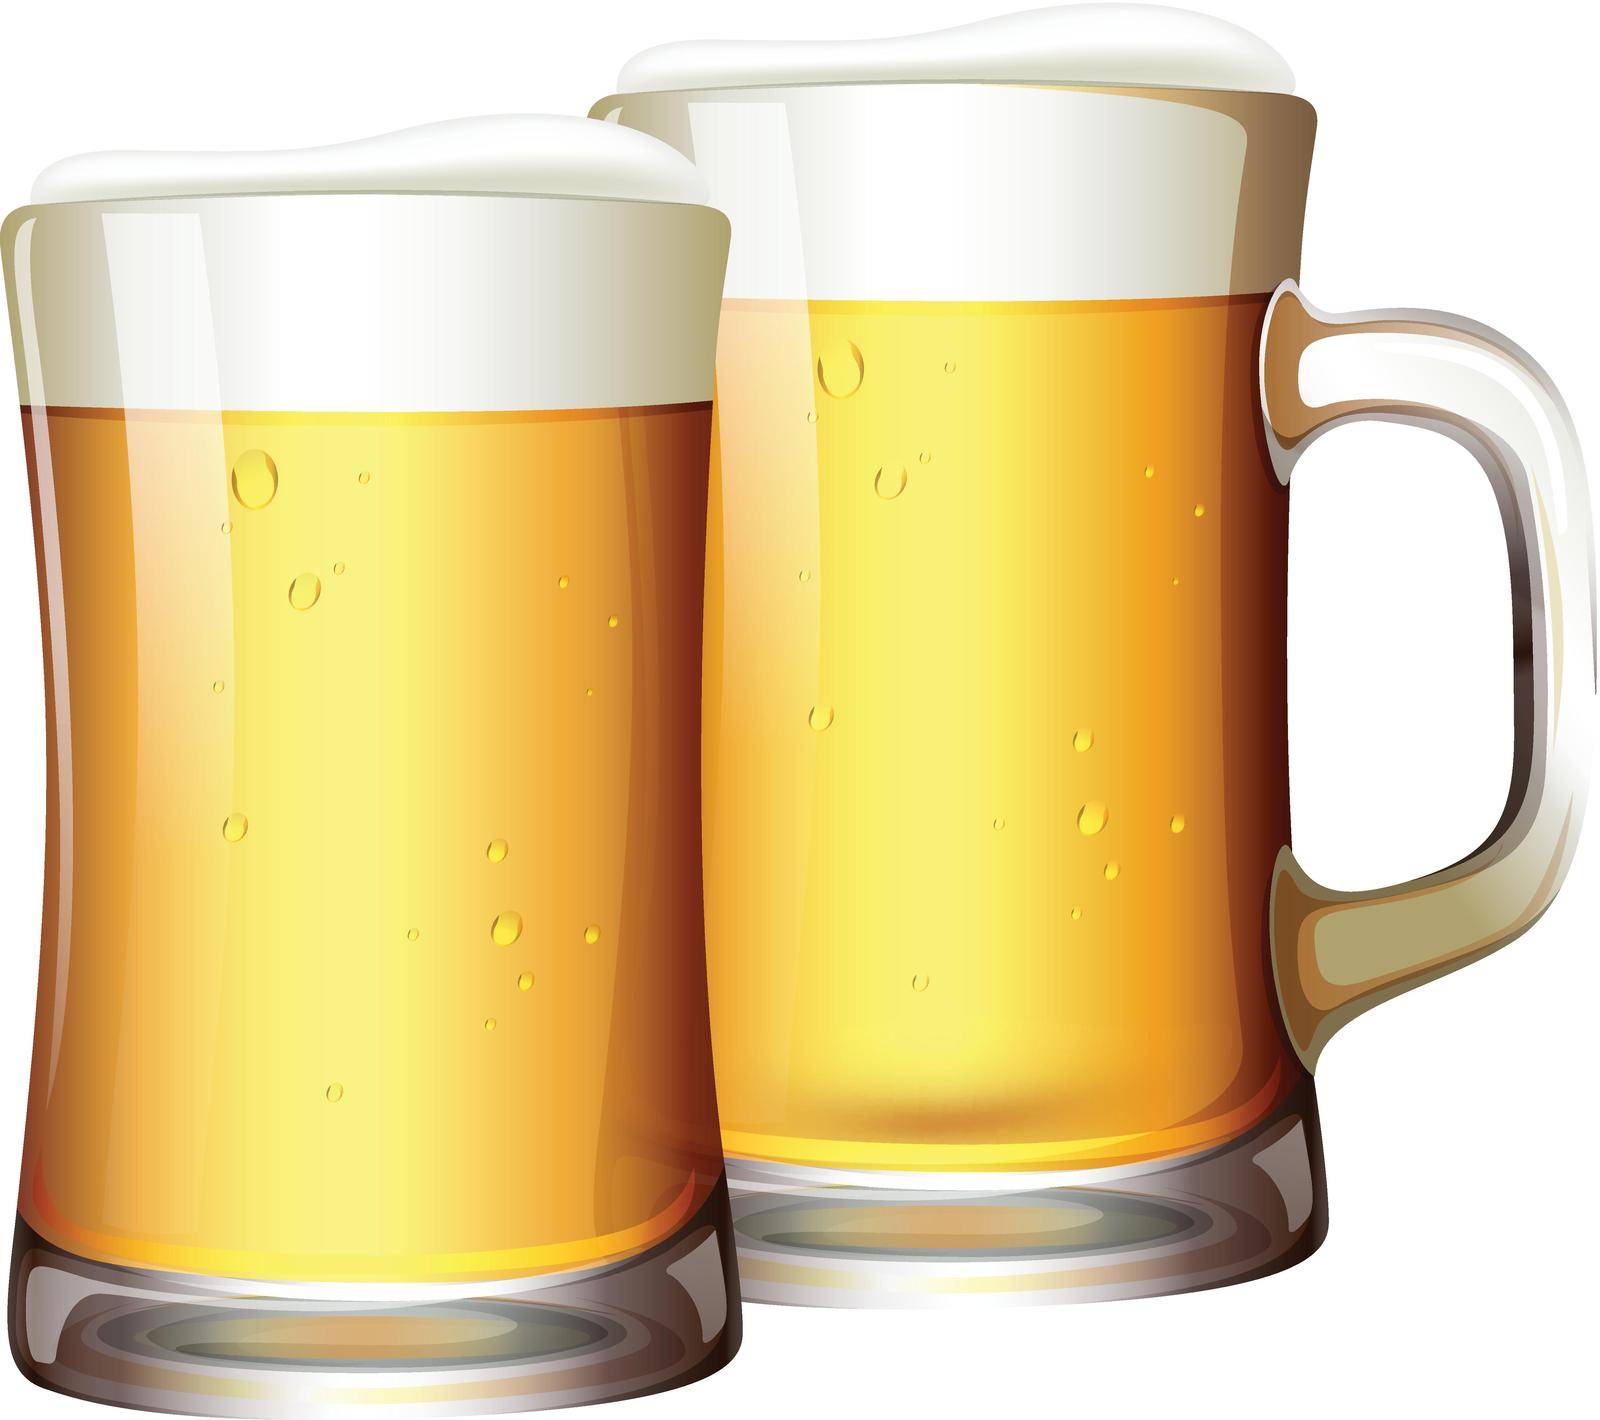 A Set of Beers in Mug illustration